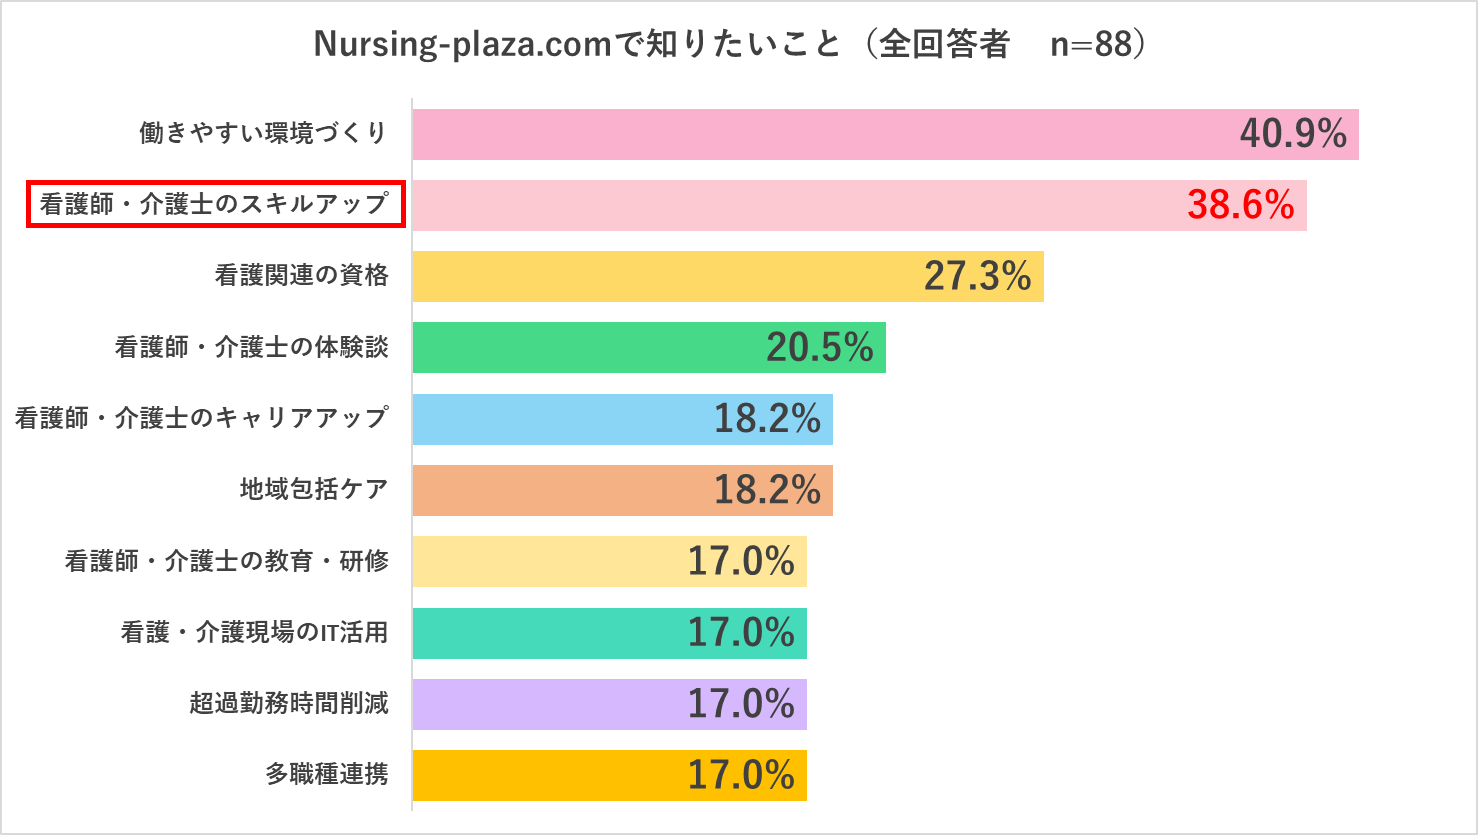 Nursing-plaza.comに関するアンケート回答_q3_all